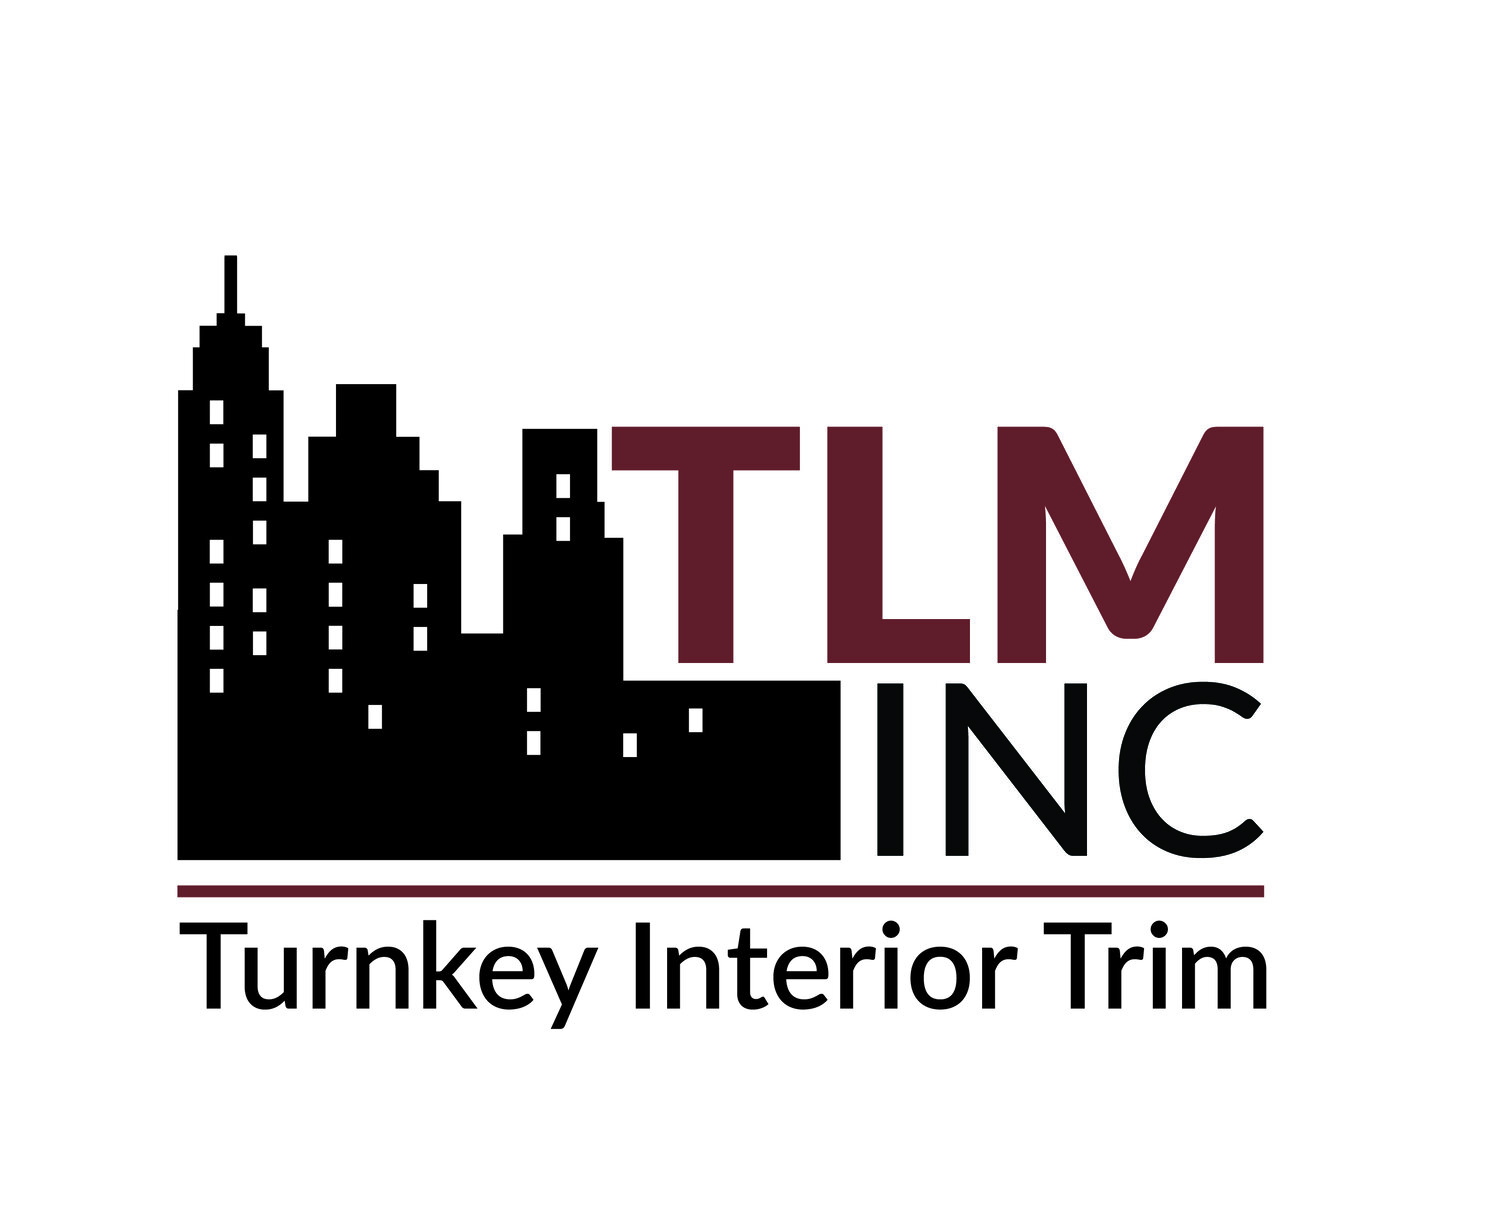 TLM Inc